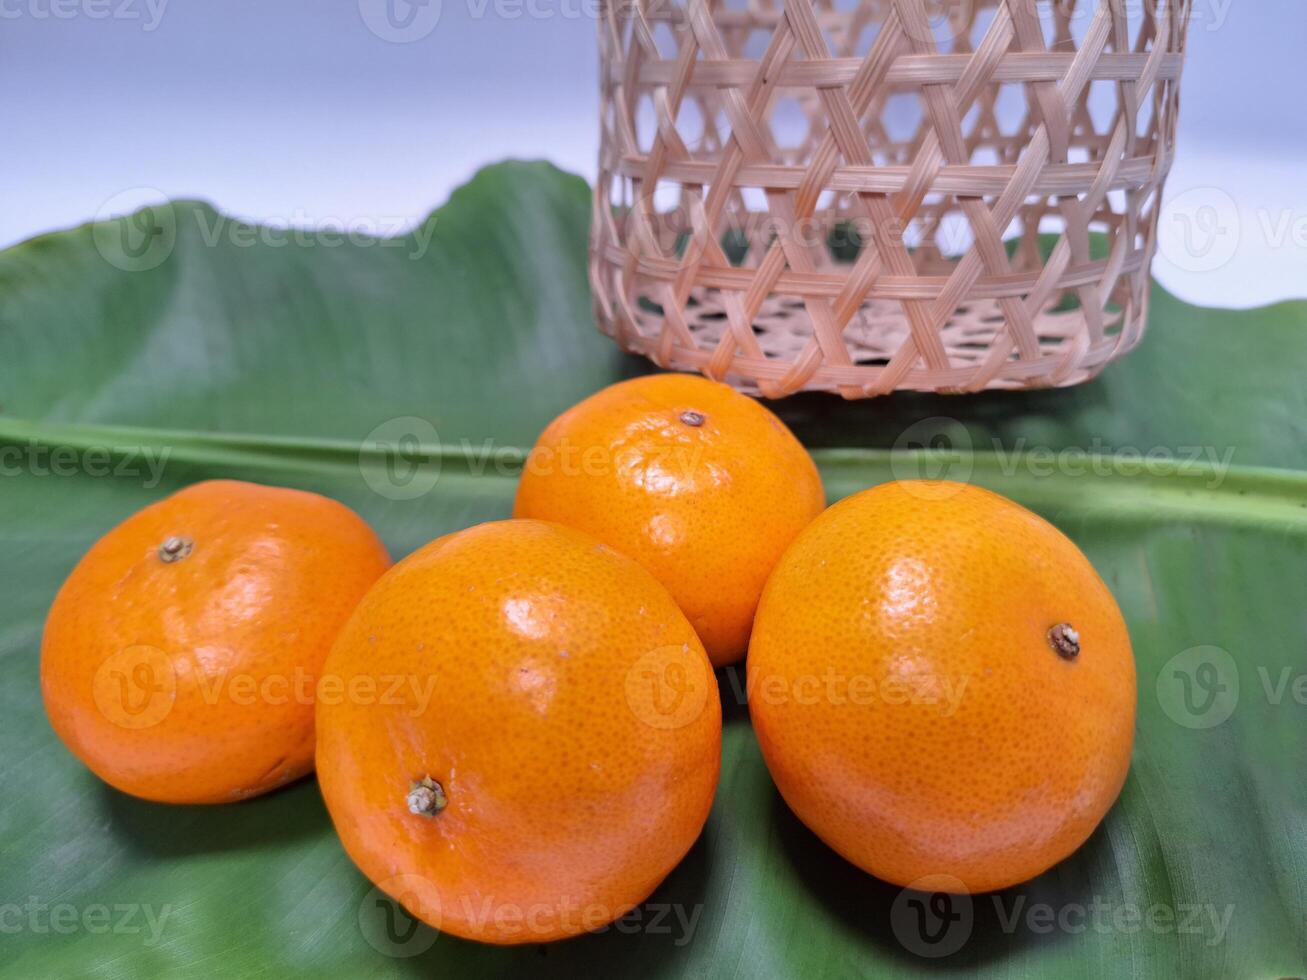 imagen de naranjas metido en un pila en plátano hojas. foto